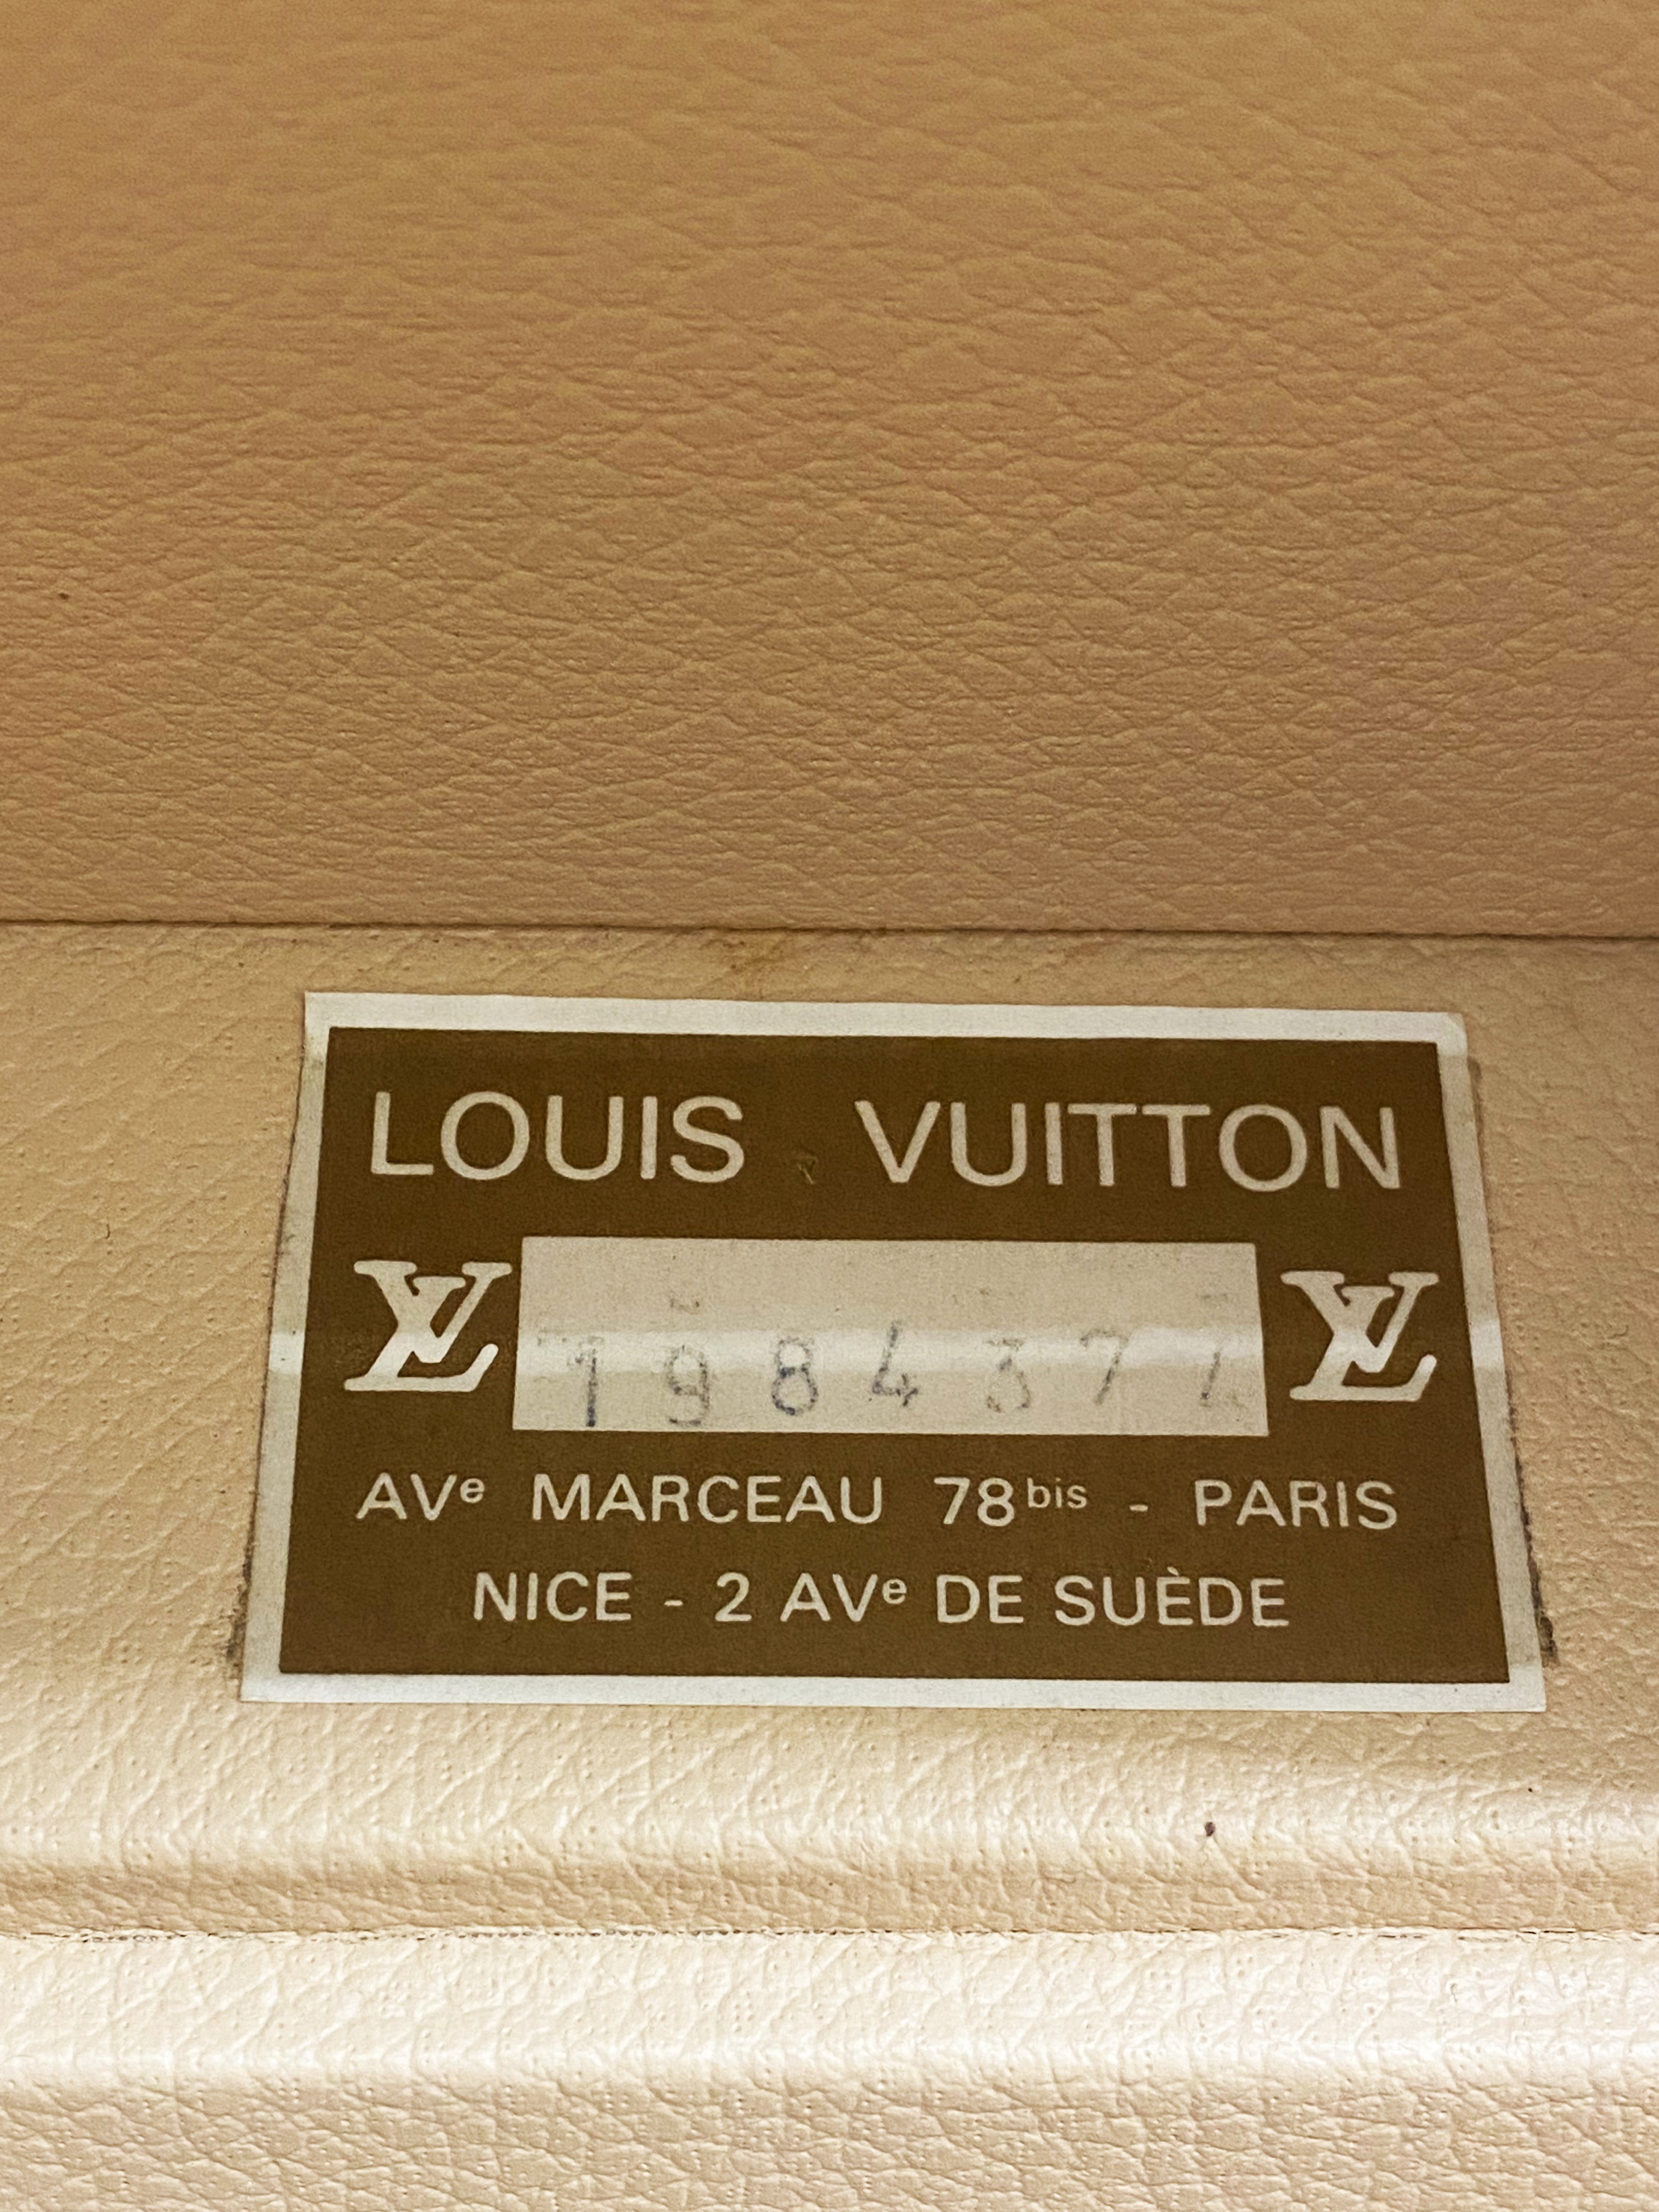 RARE!!! Authentic Vintage 80's Louis Vuitton Monogram Canvas